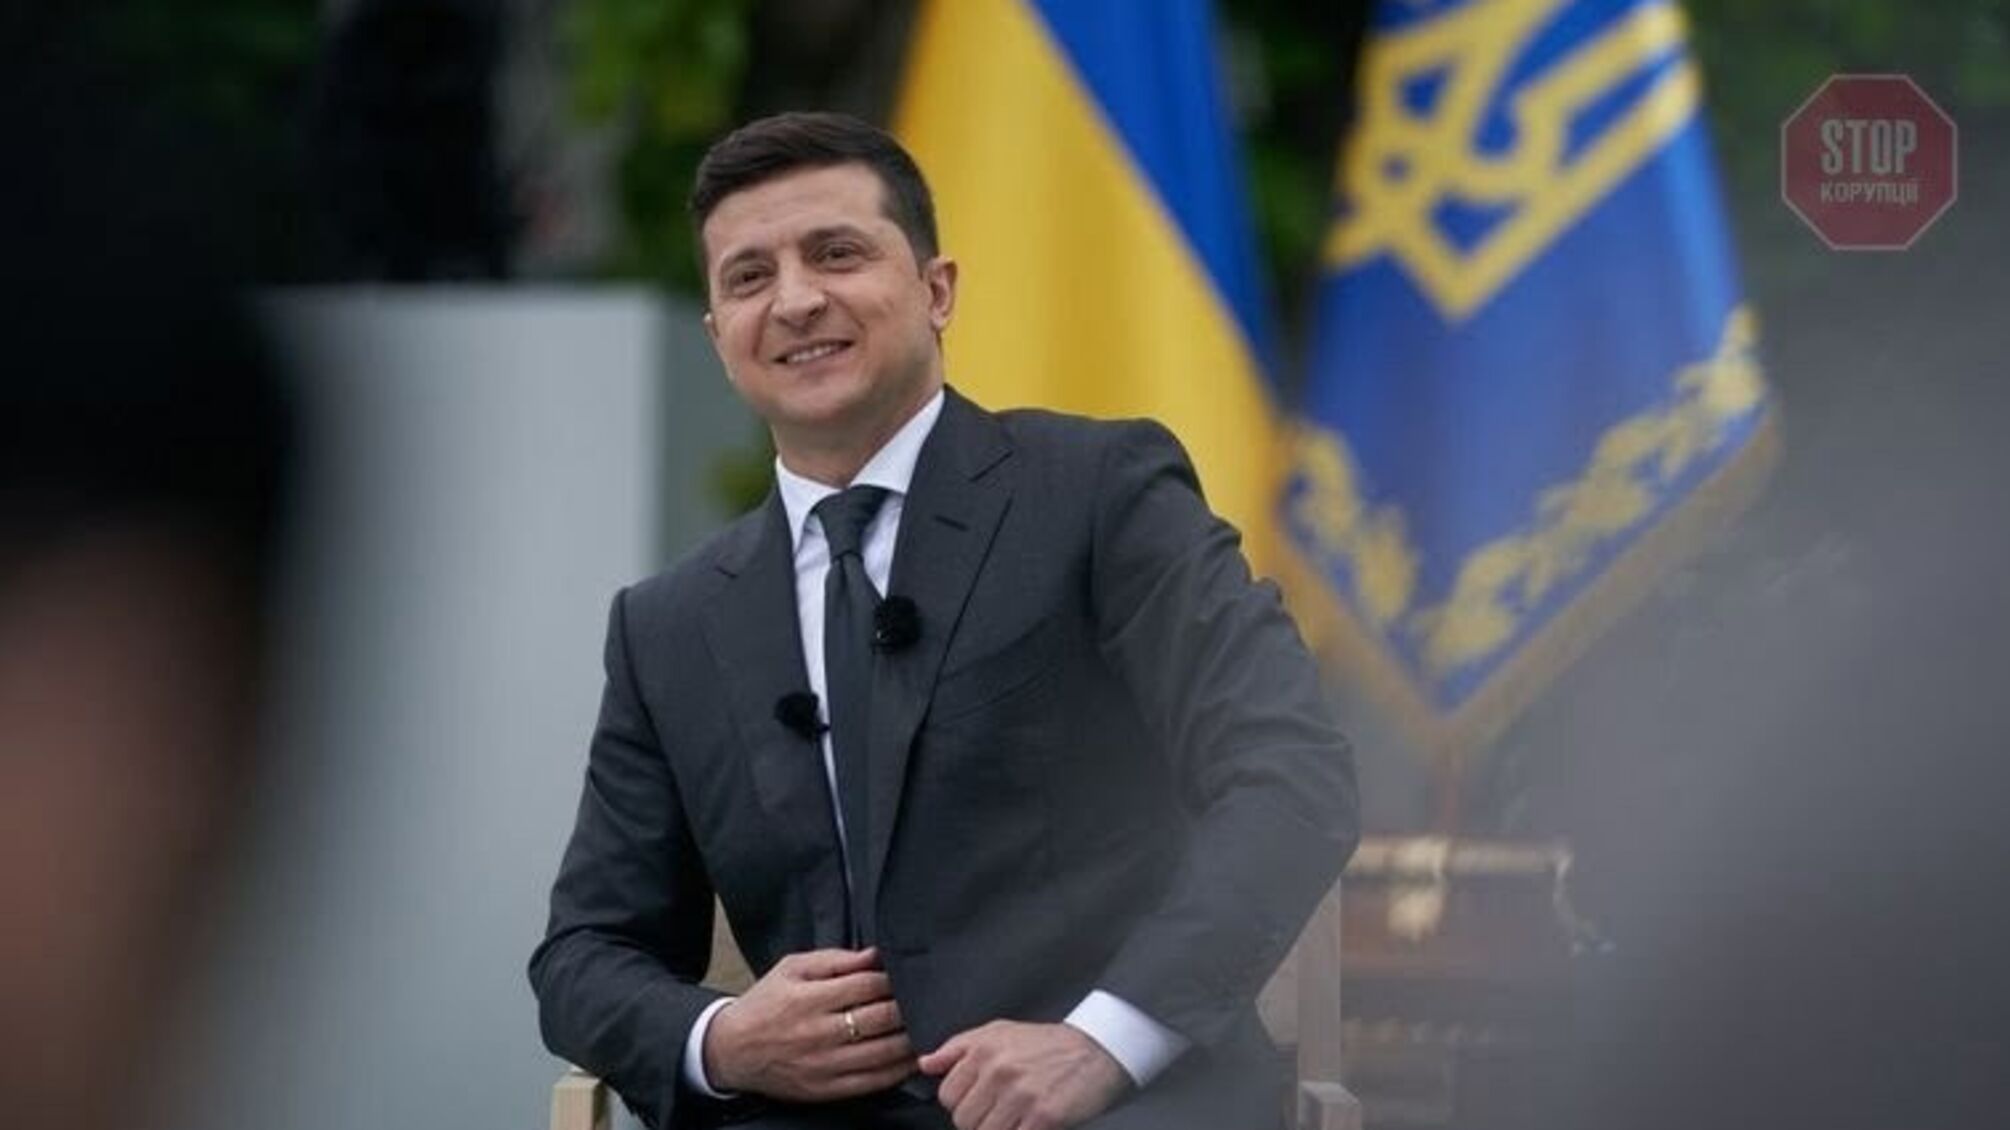 '30 запитань Президенту України': пряма трансляція пресмарафону Зеленського (відео)